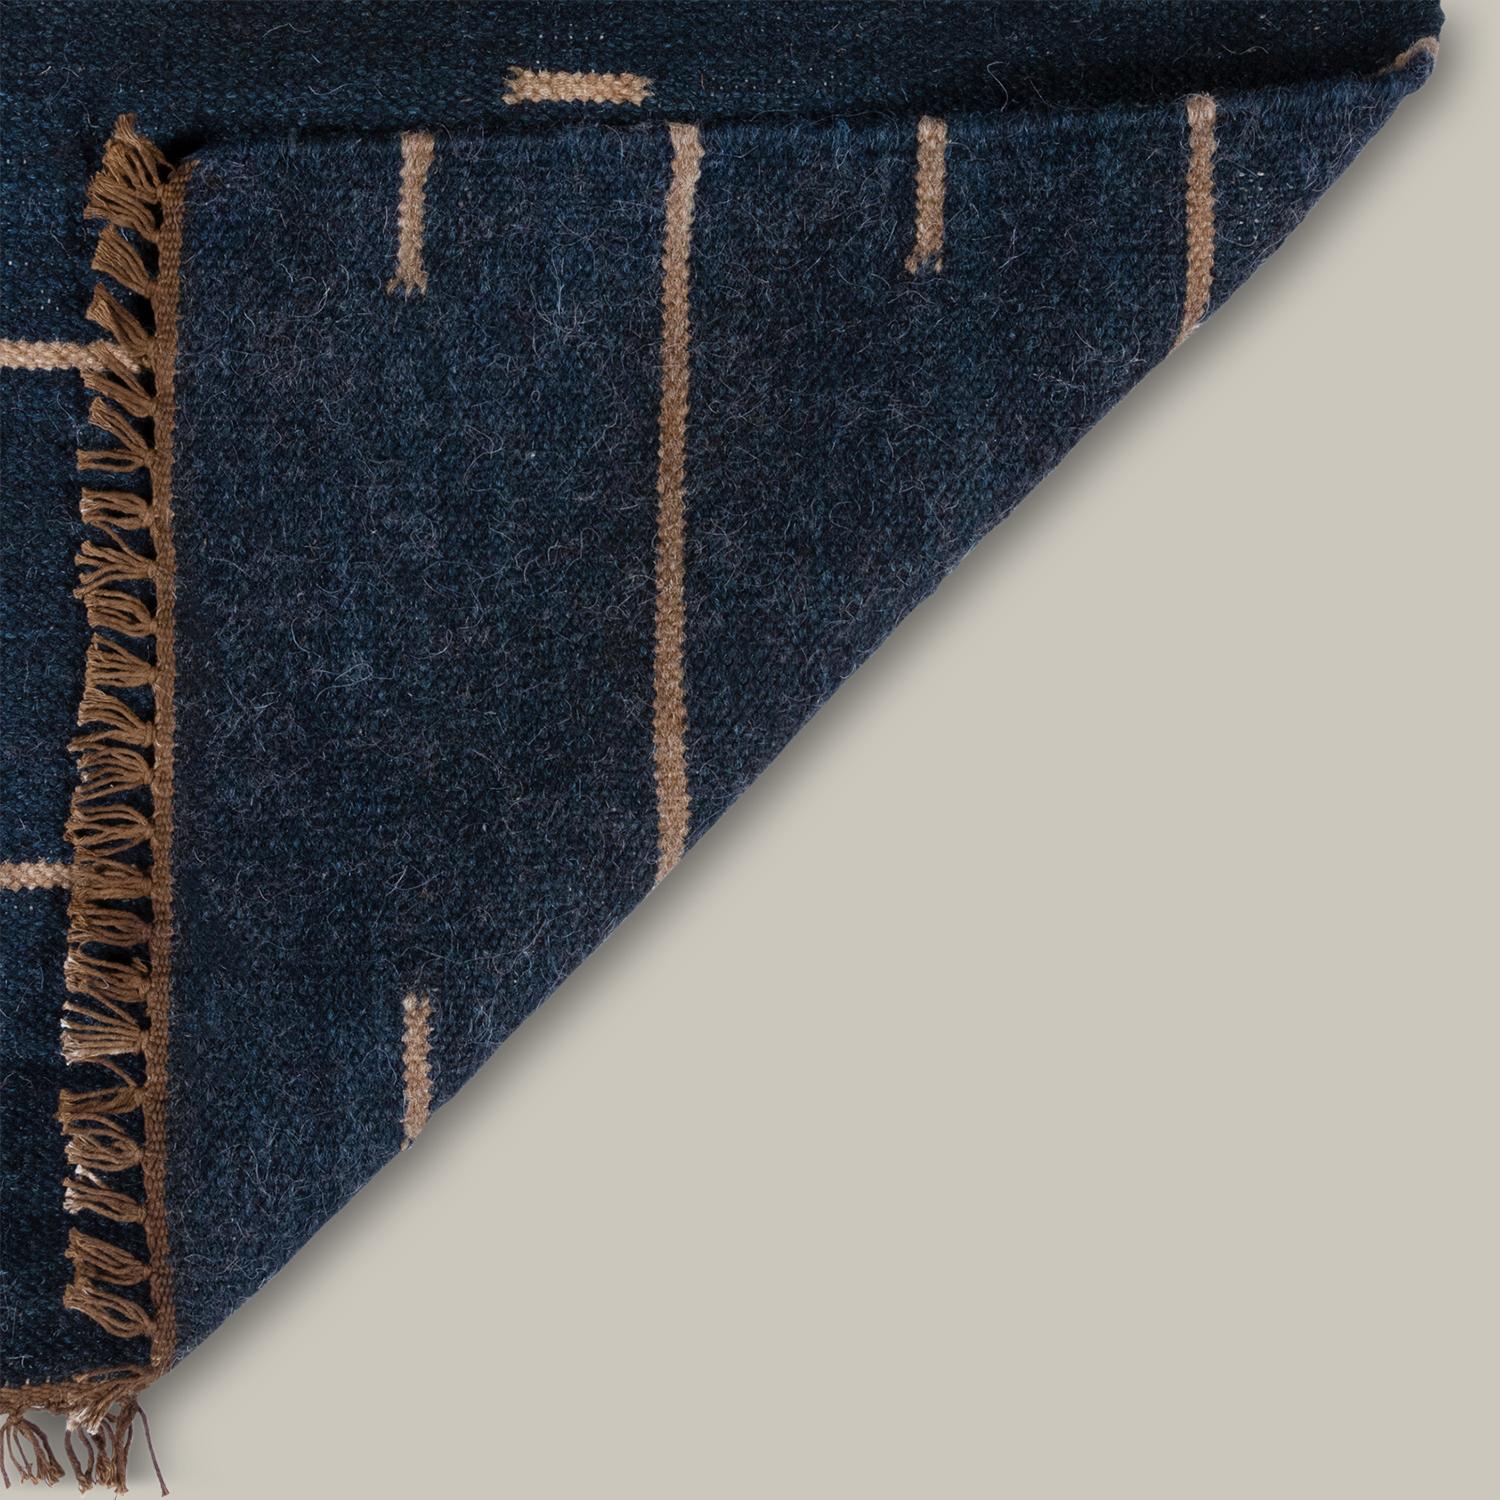 Inspiriert von Shibori, skandinavischen Flachgeweben und einer Vielzahl anderer handgefärbter Textilien, sind die Muster der Duar-Kollektion von der Geschichte geprägt. Space dyed